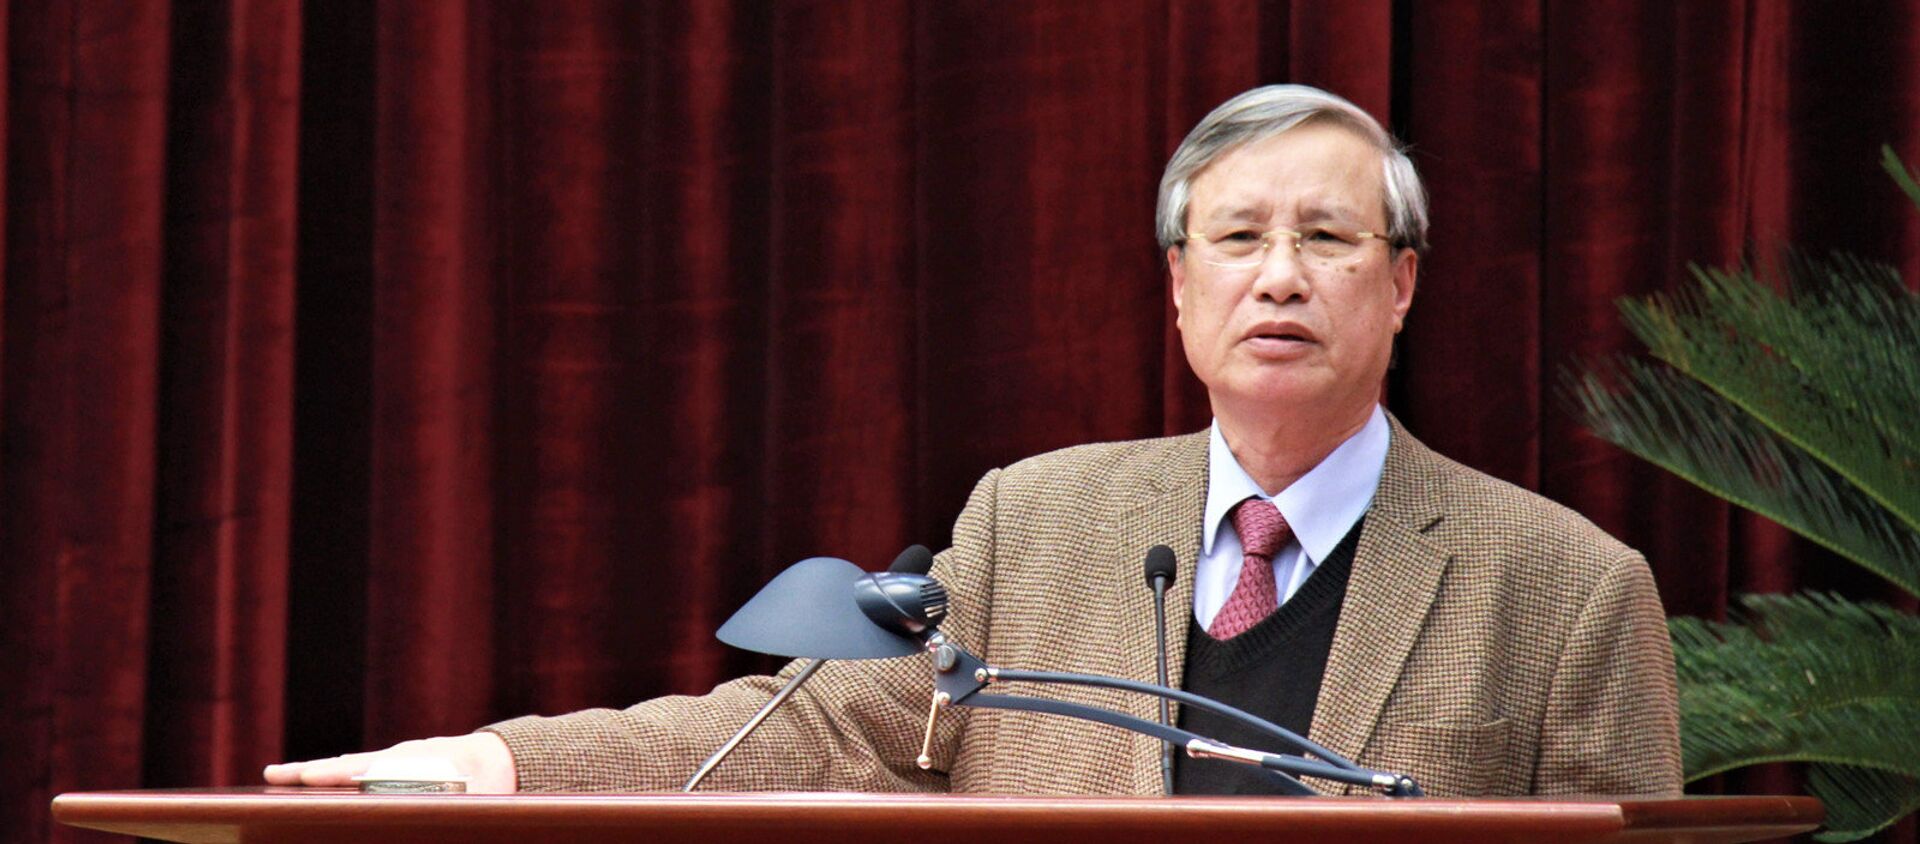 Ông Trần Quốc Vượng phát biểu tại hội nghị sáng 18.1 - Sputnik Việt Nam, 1920, 09.02.2018